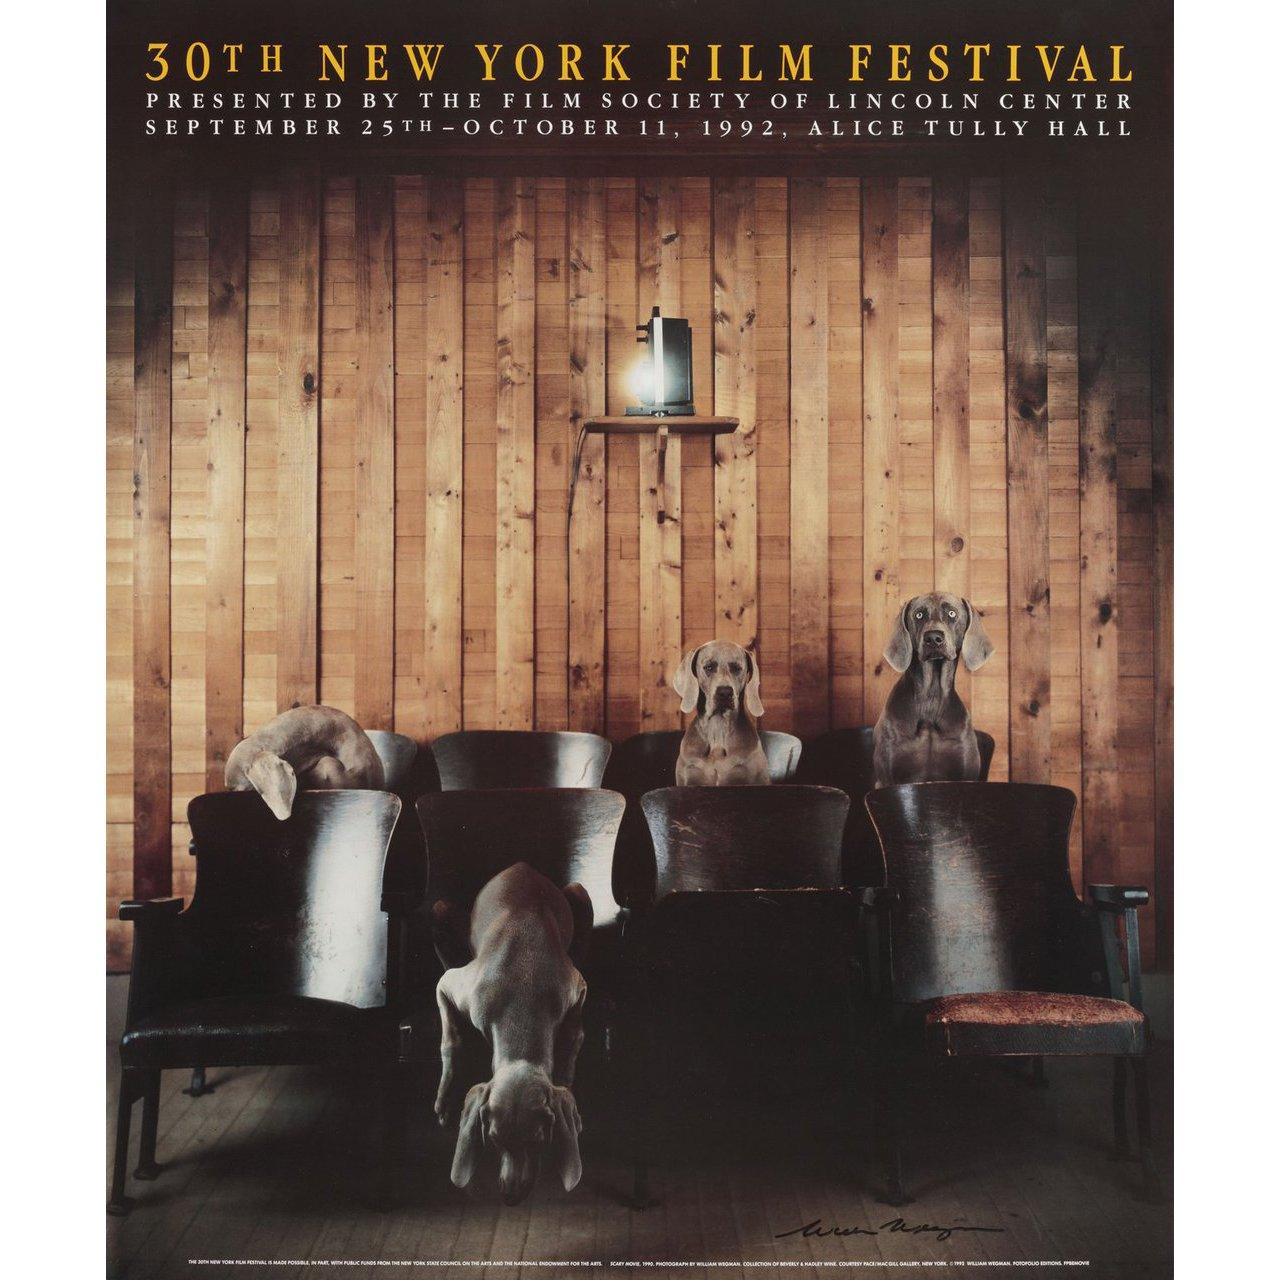 Original US-Plakat von William Wegman aus dem Jahr 1992 für das New York Film Festival 1963. Signiert von William Wegman. Sehr guter Zustand, gerollt. Bitte beachten Sie: Die Größe ist in Zoll angegeben und die tatsächliche Größe kann um einen Zoll